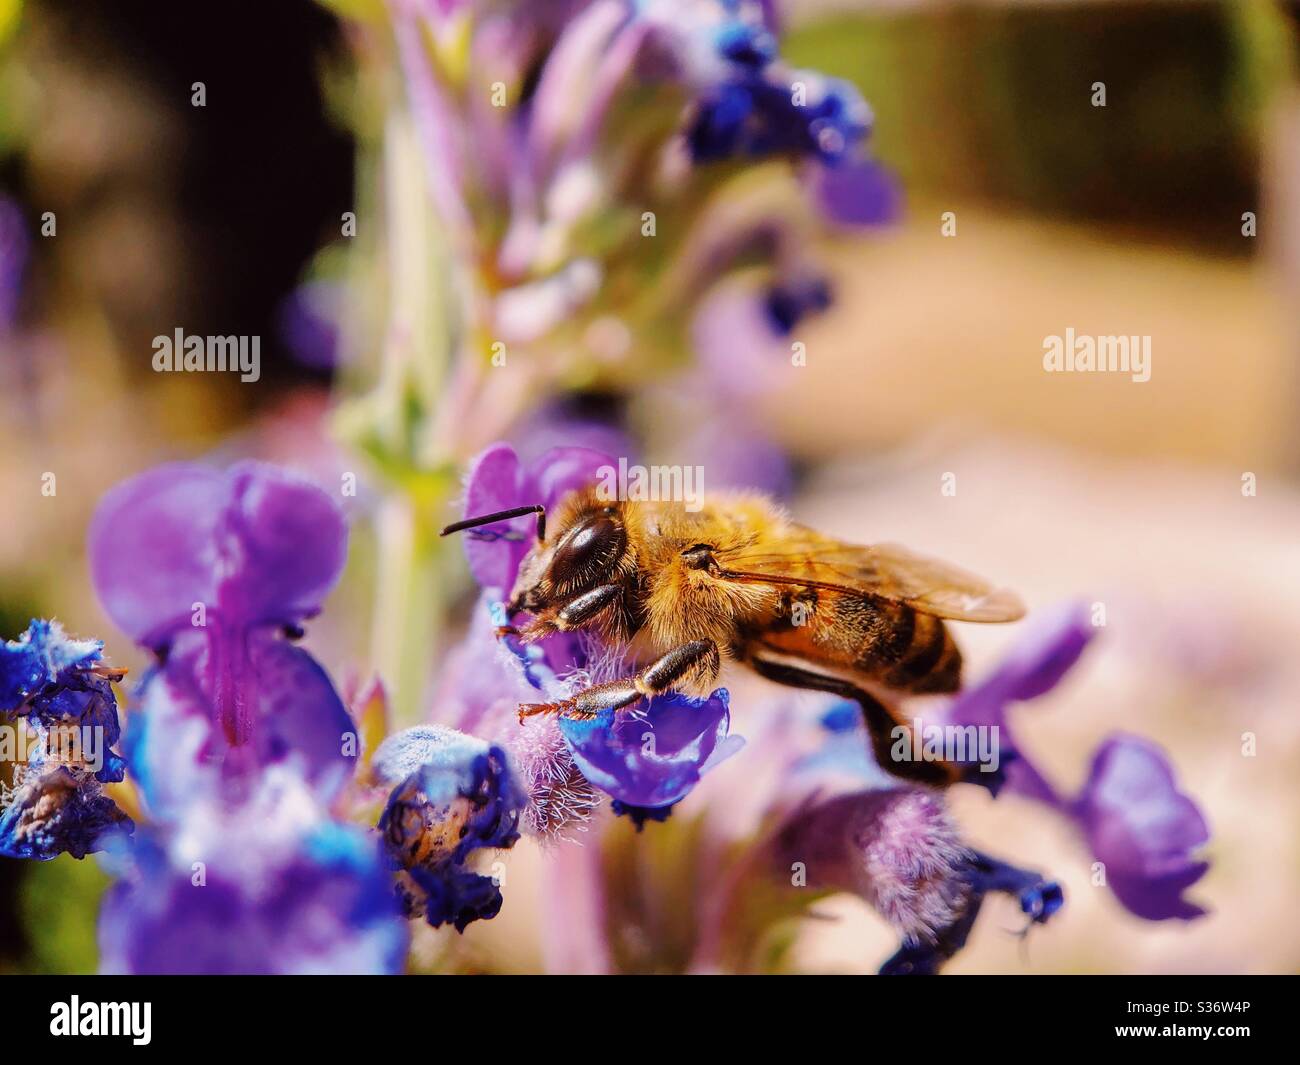 Honeybee foraging on catnip Stock Photo